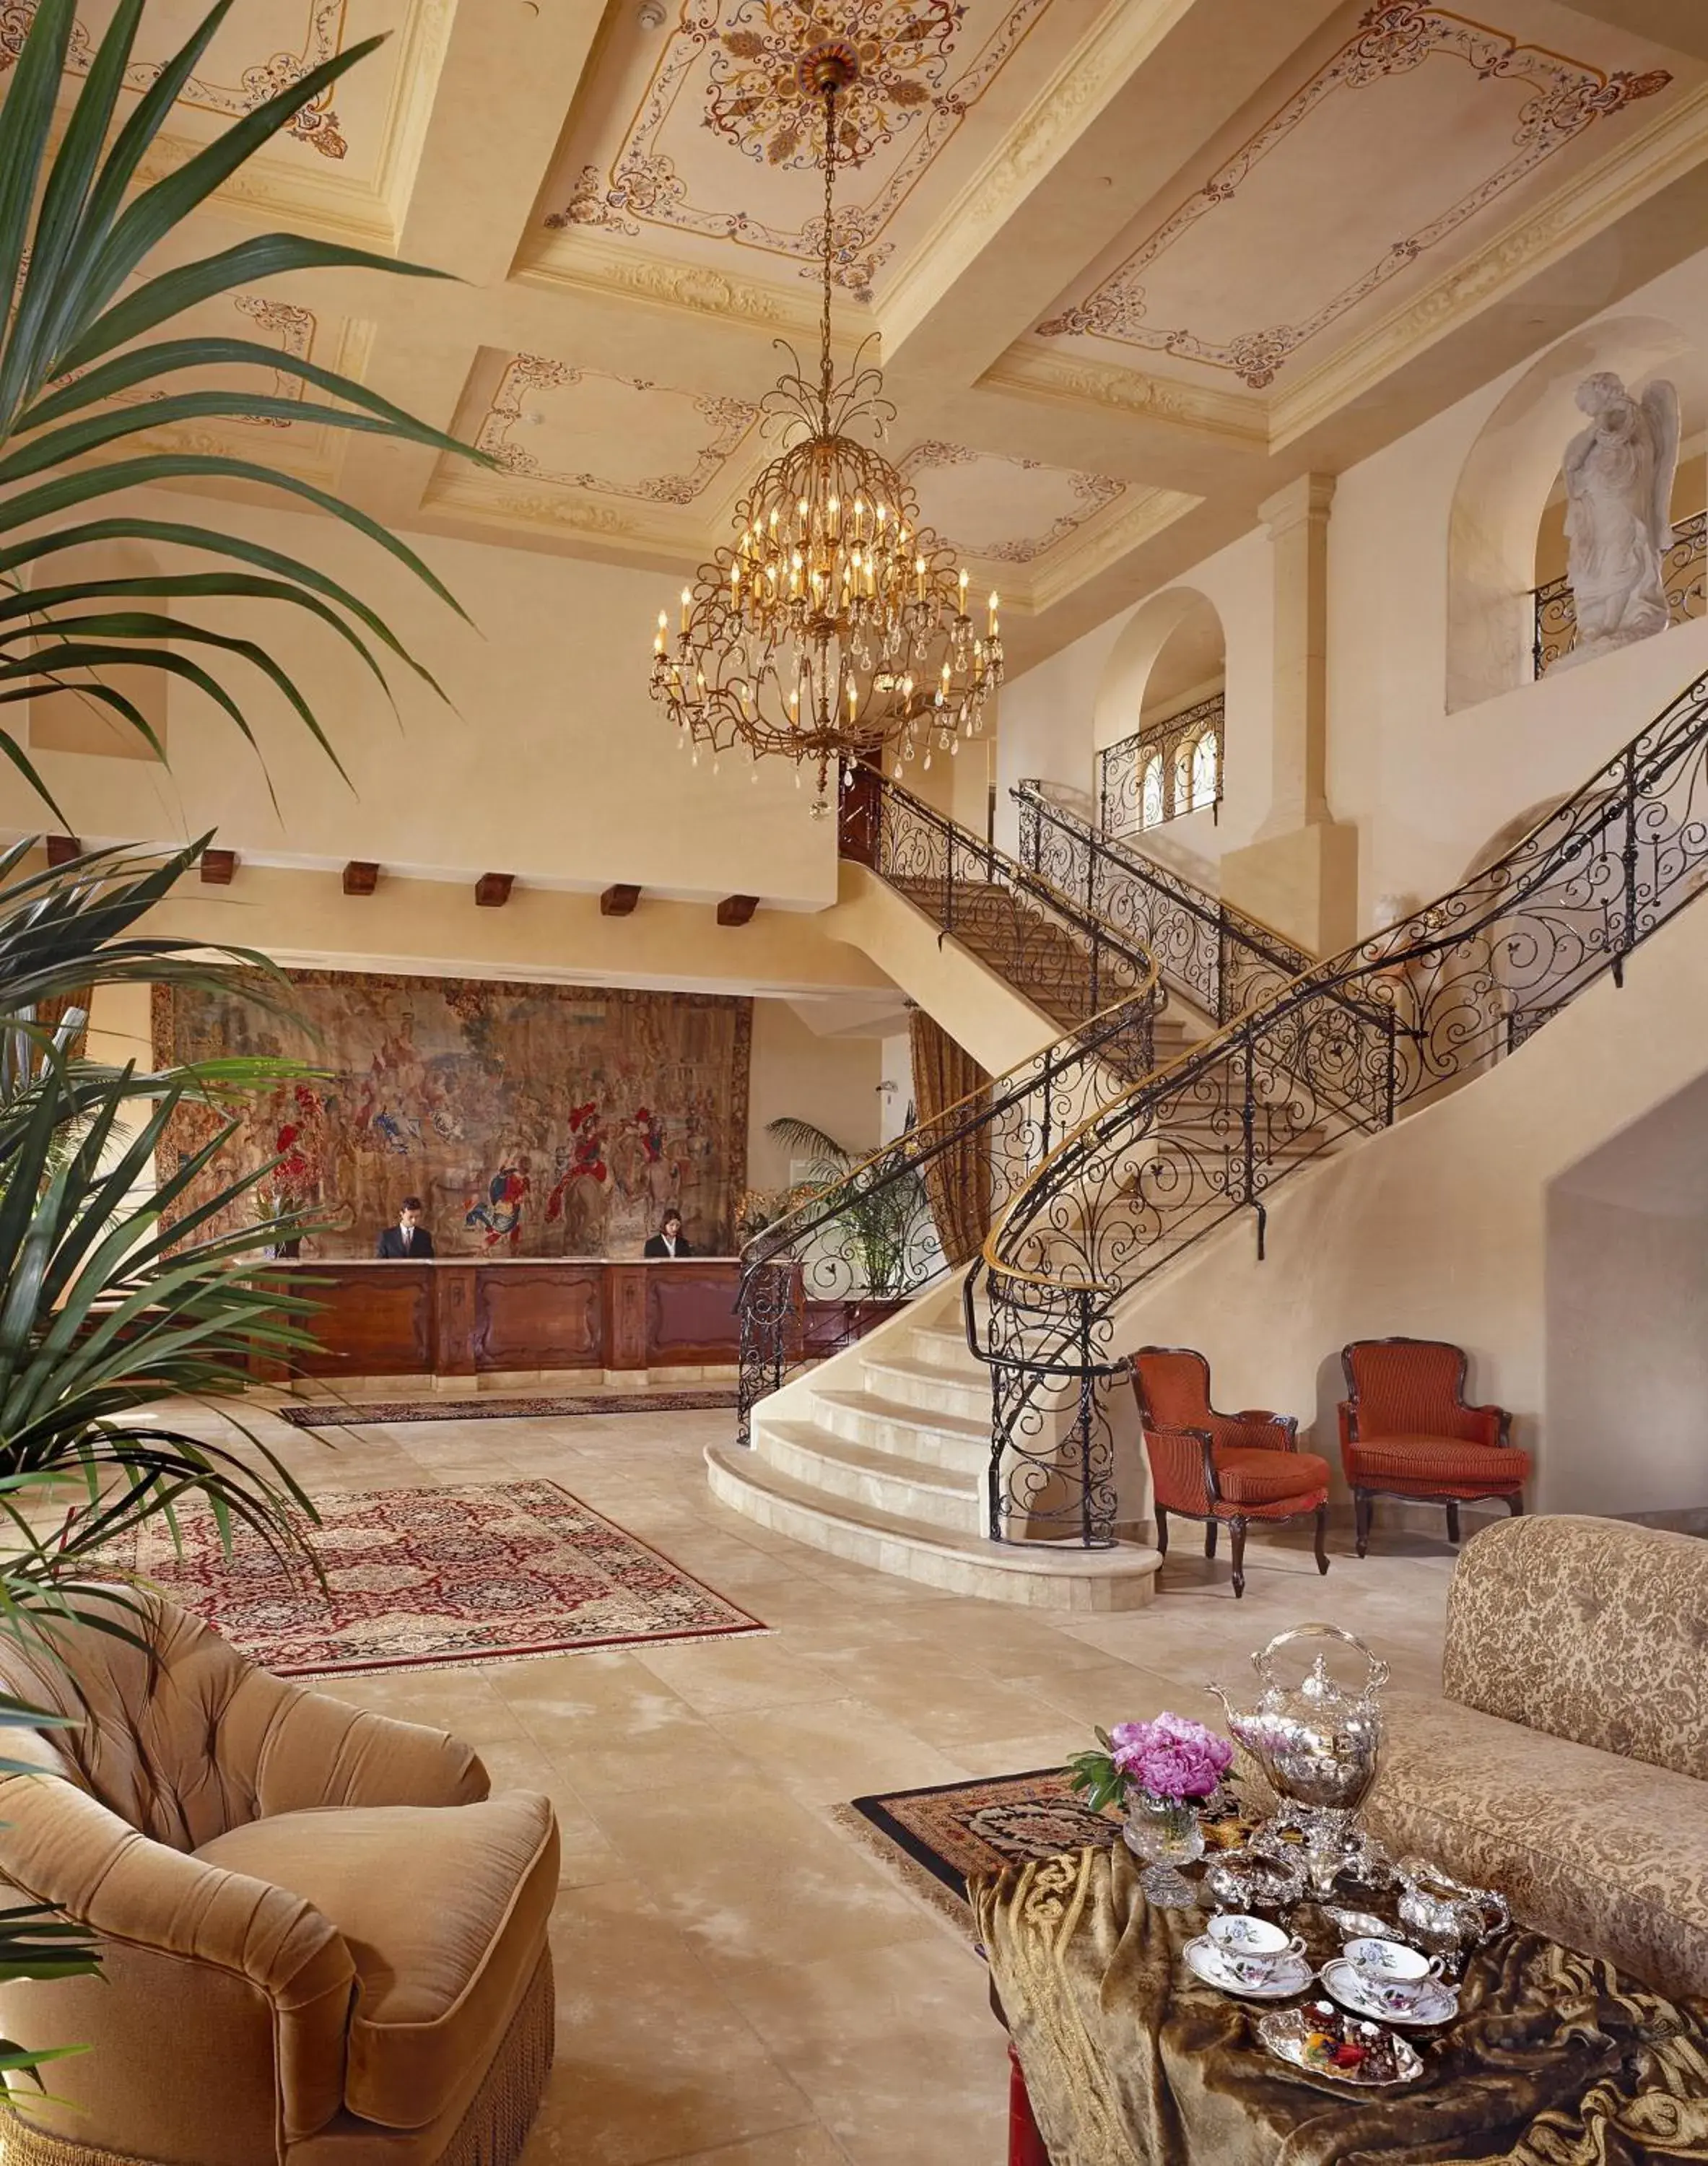 Lobby or reception, Lobby/Reception in Ayres Hotel Manhattan Beach Hawthorne